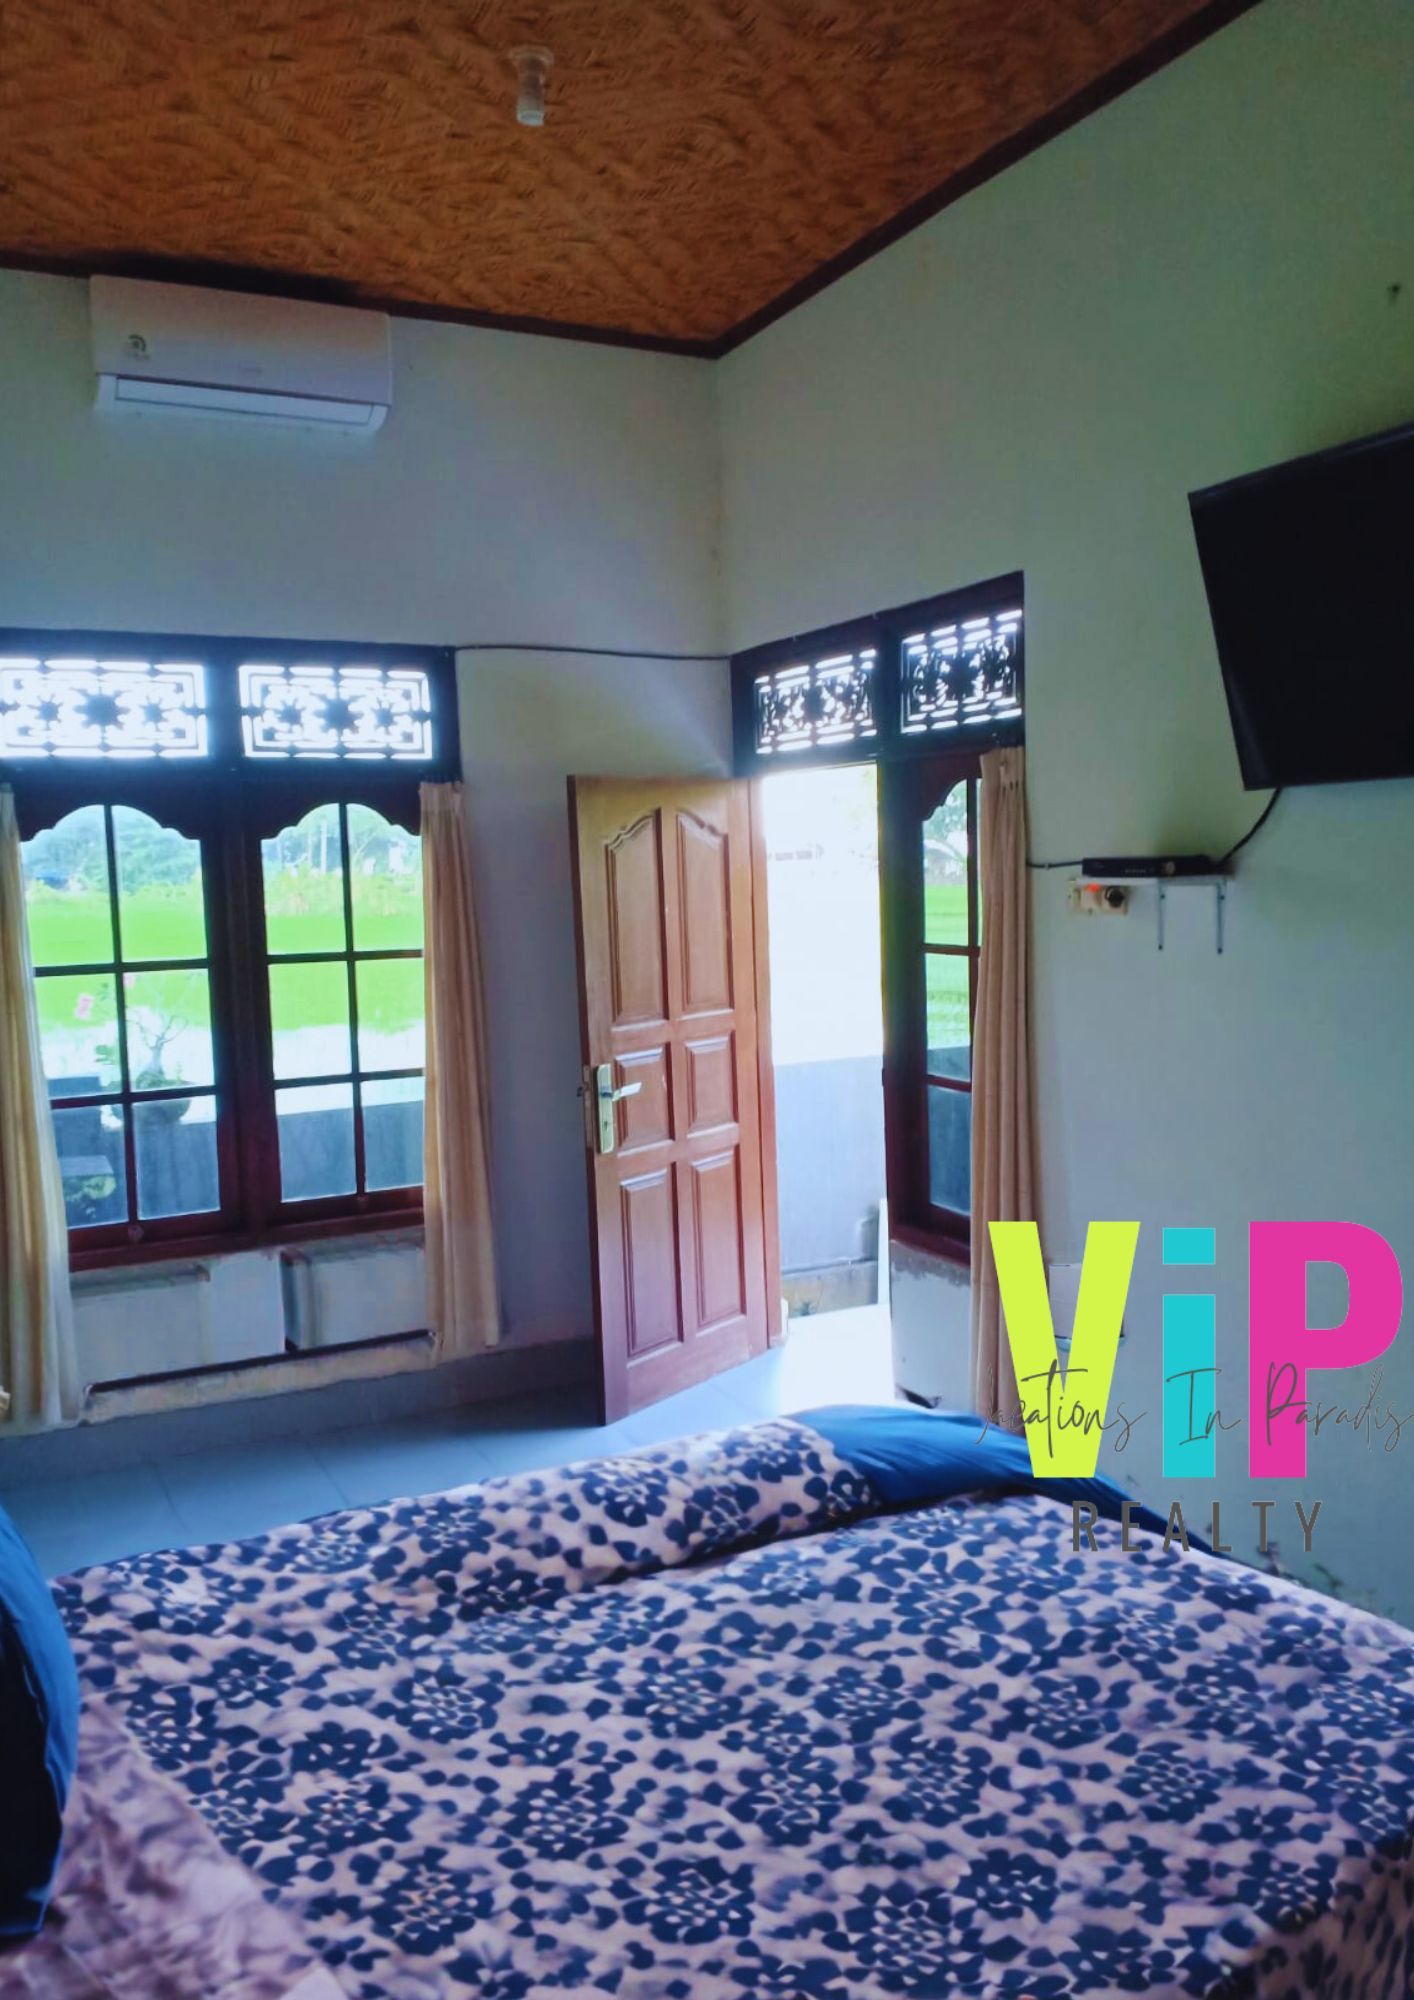 VIP117 - Bedroom.jpg